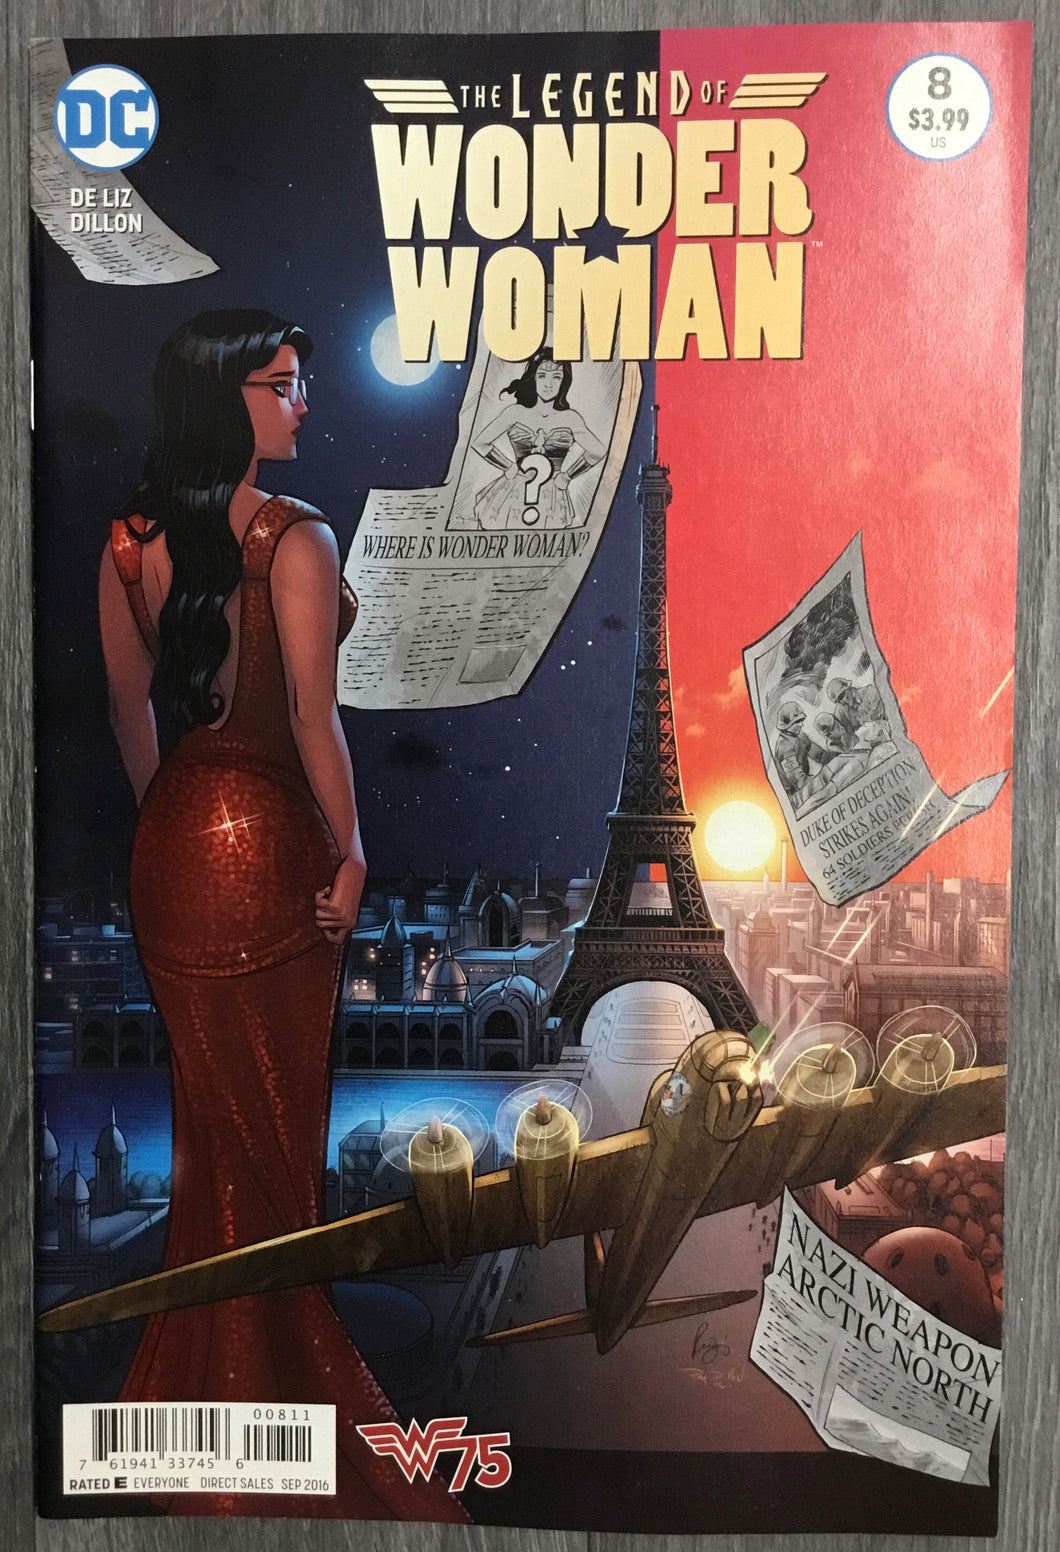 The Legend of Wonder Woman No. #8 2016 DC Comics